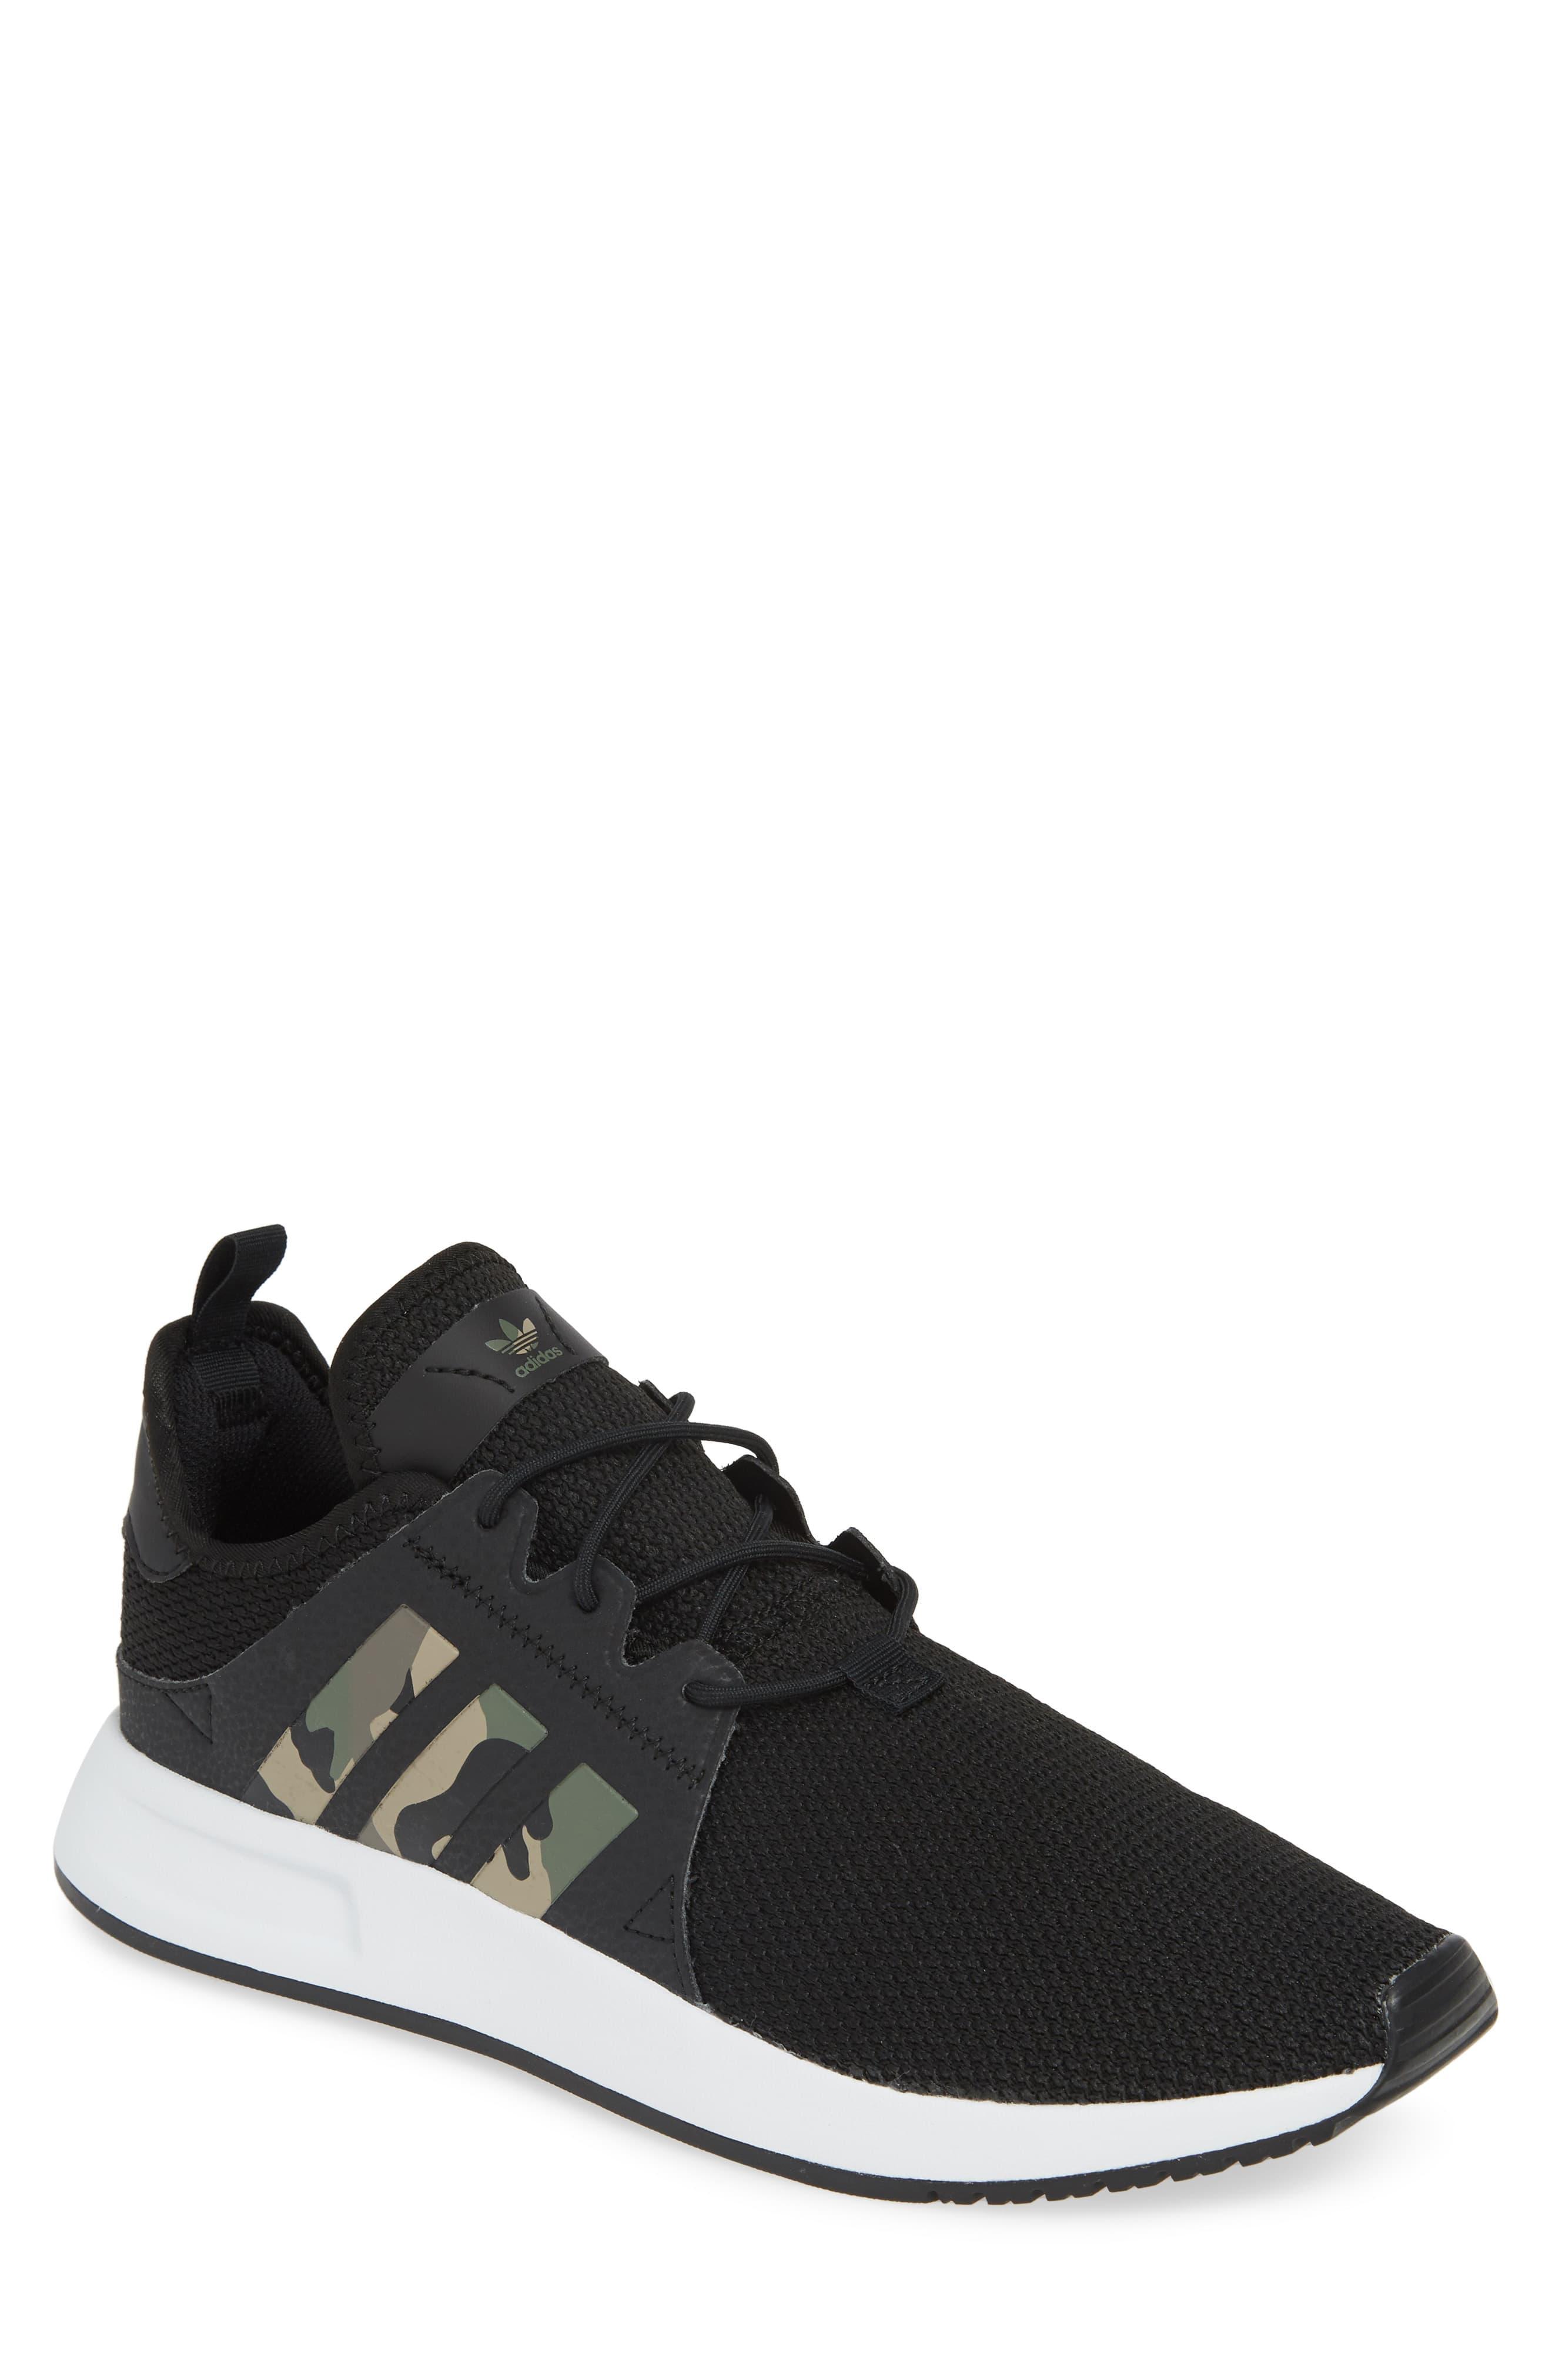 adidas X_plr Core Black & Camo Shoes for Men | Lyst